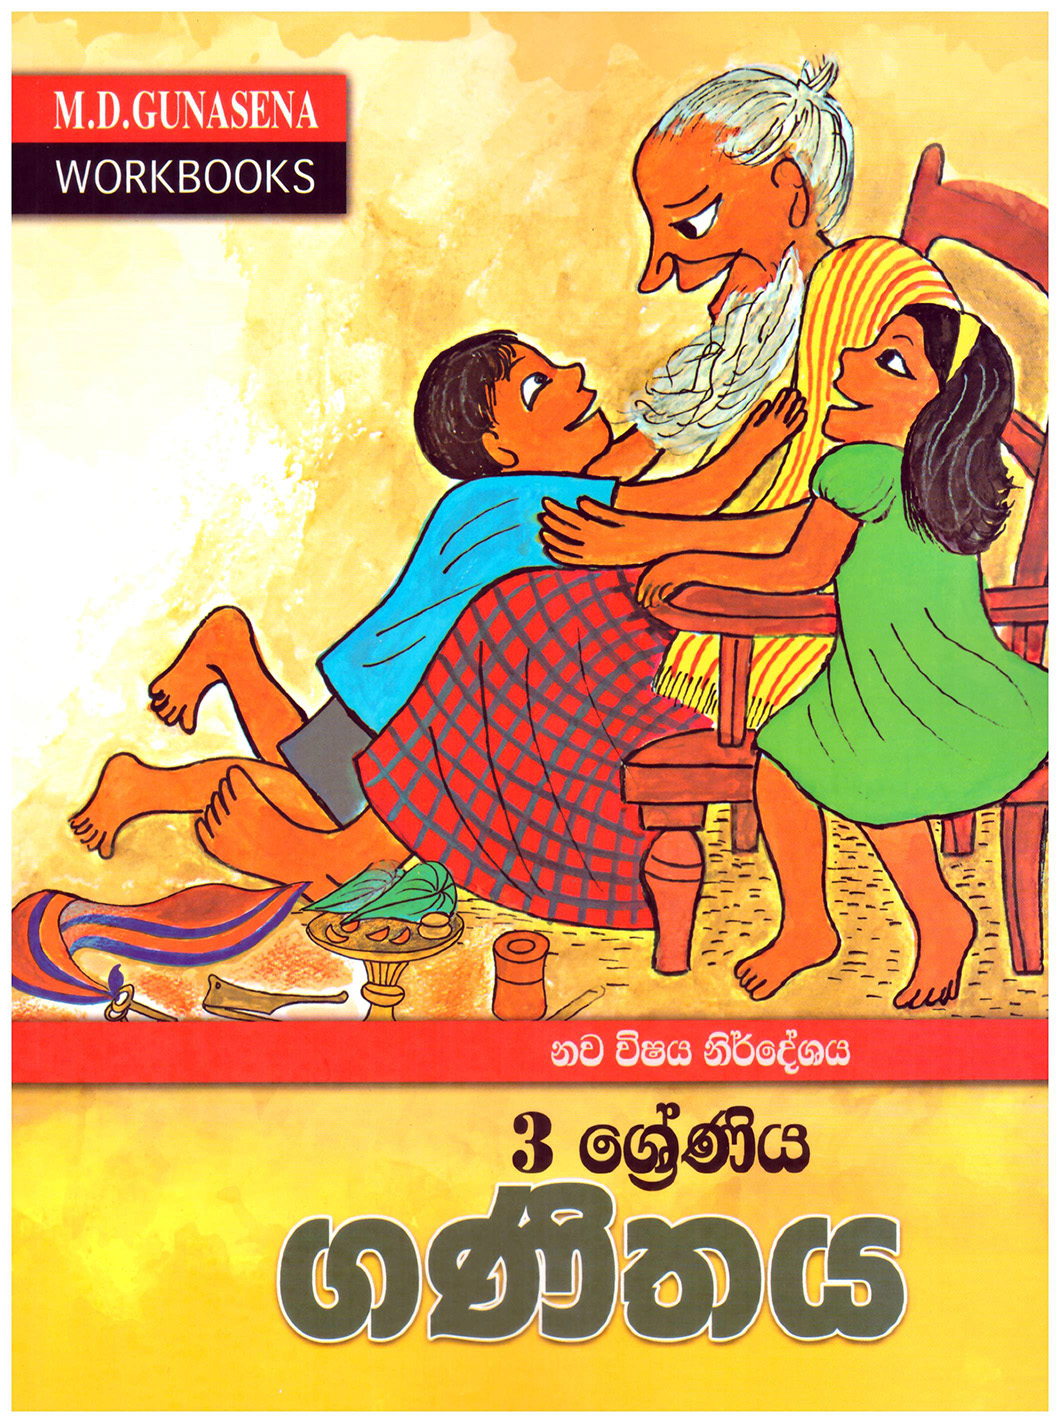 M.D. Gunasena Workbooks : Ganithaya 03 Shreniya